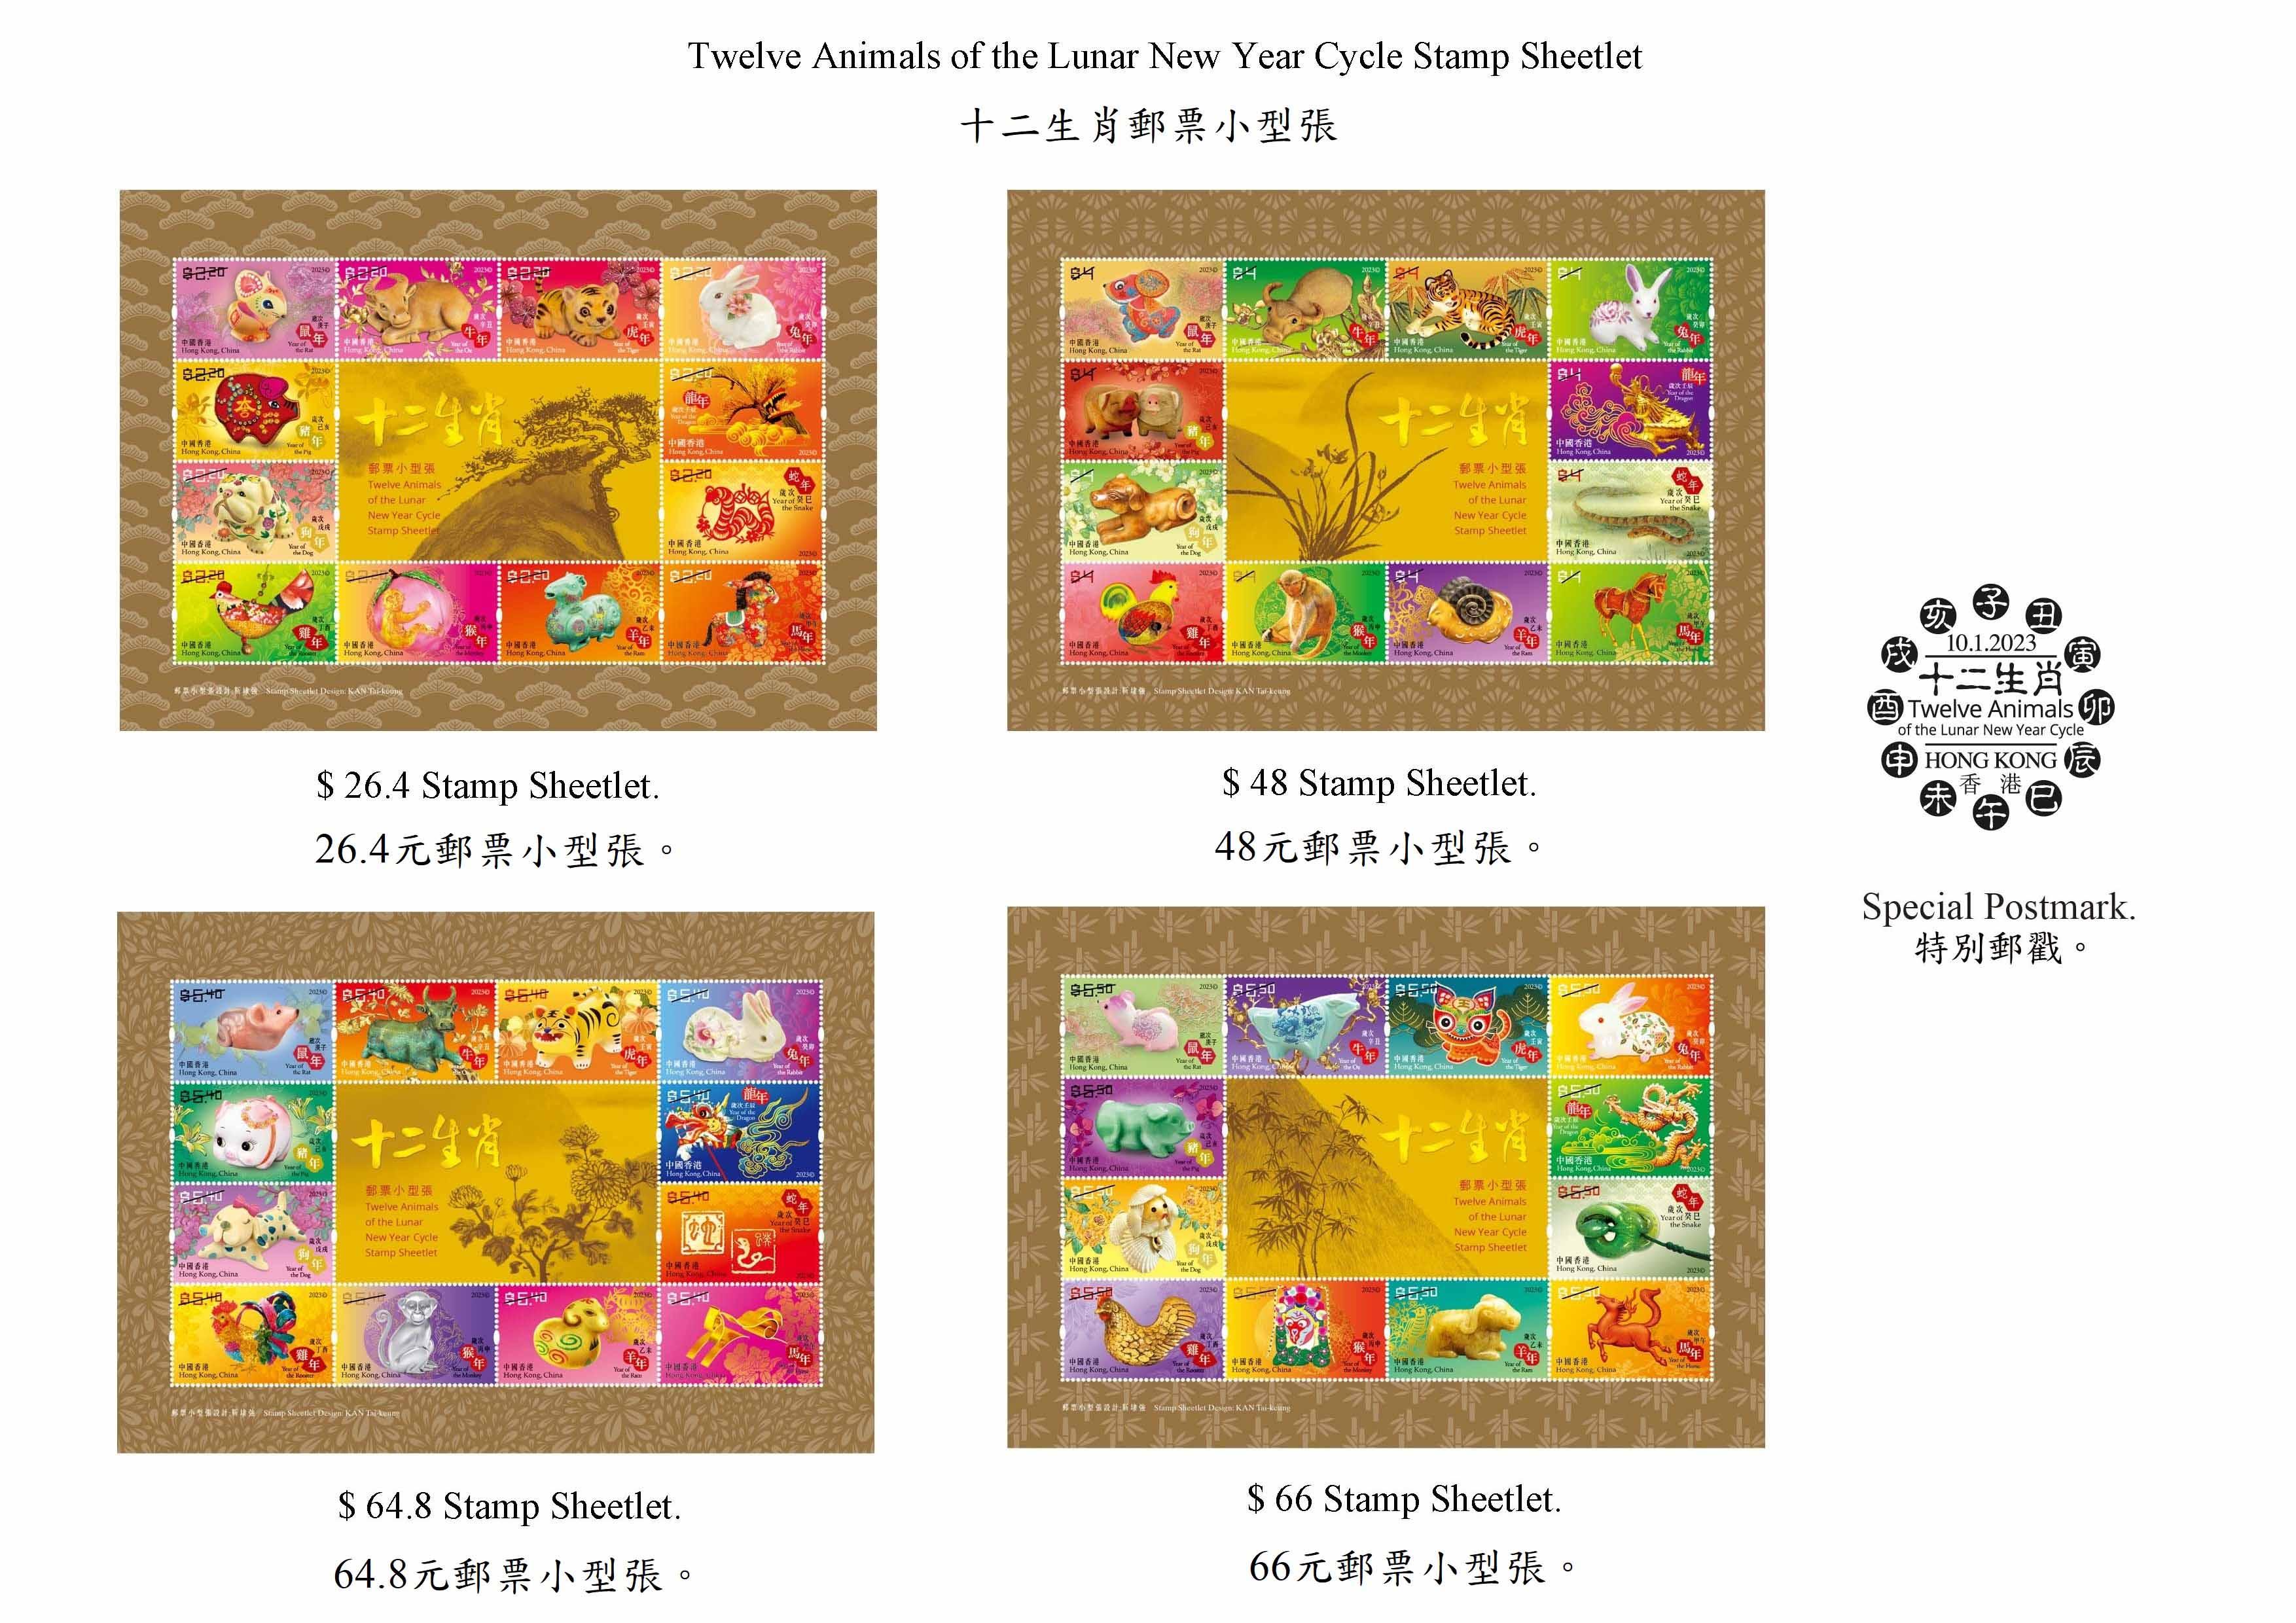 香港邮政二○二三年一月十日（星期二）发行以「岁次癸卯（兔年）」为题的特别邮票及相关集邮品，同日亦推出「十二生肖邮票小型张」。图示以「十二生肖邮票小型张」为题的邮票小型张和特别邮戳。